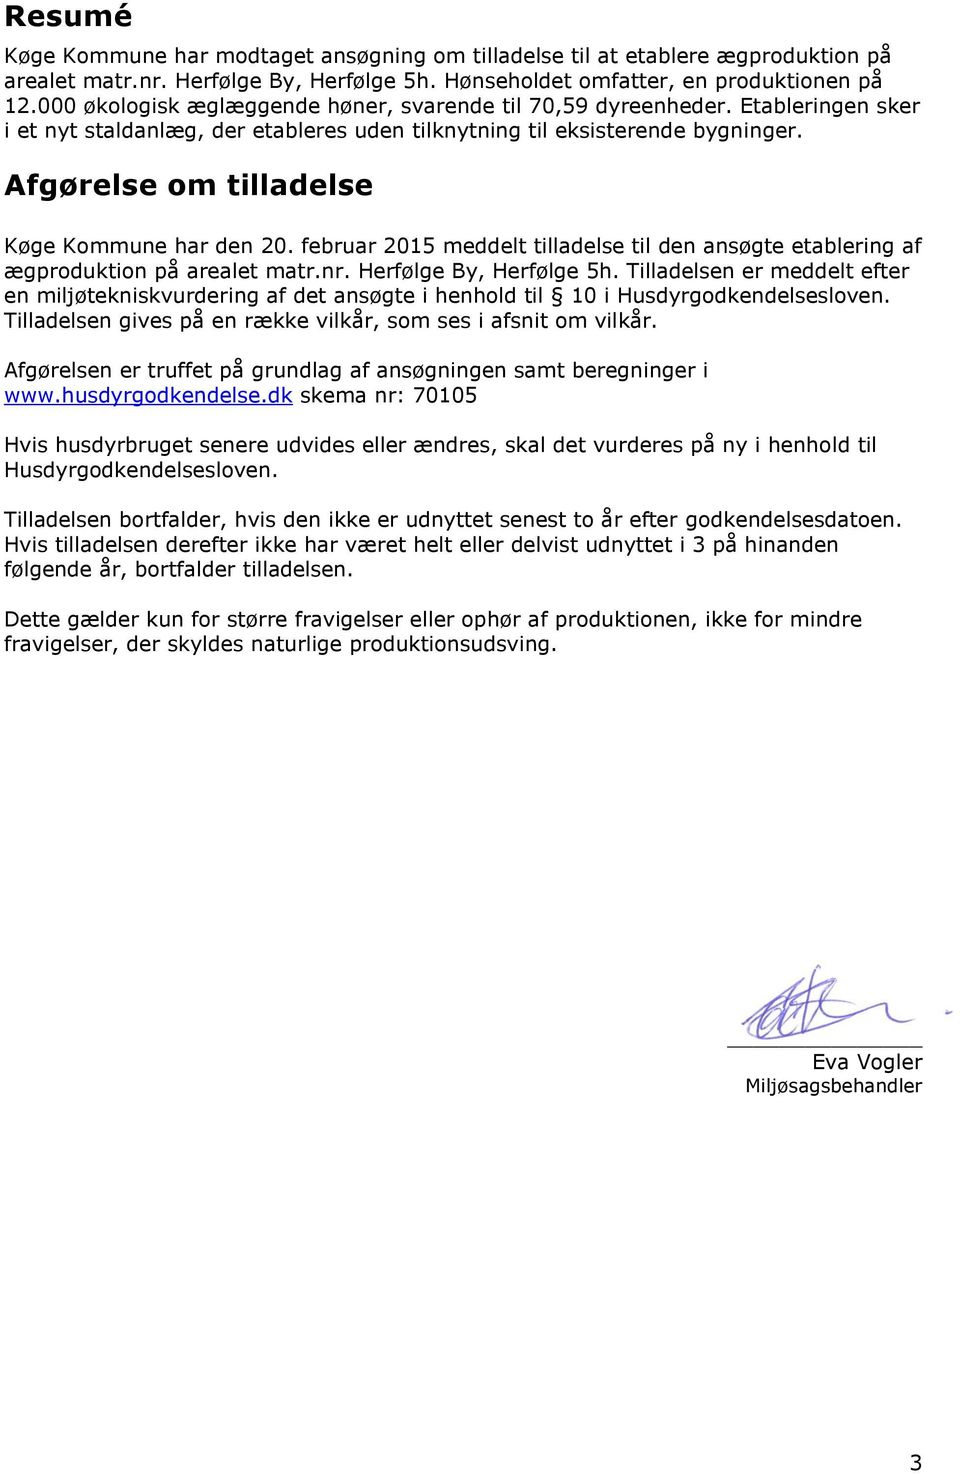 Afgørelse om tilladelse Køge Kommune har den 20. februar 2015 meddelt tilladelse til den ansøgte etablering af ægproduktion på arealet matr.nr. Herfølge By, Herfølge 5h.